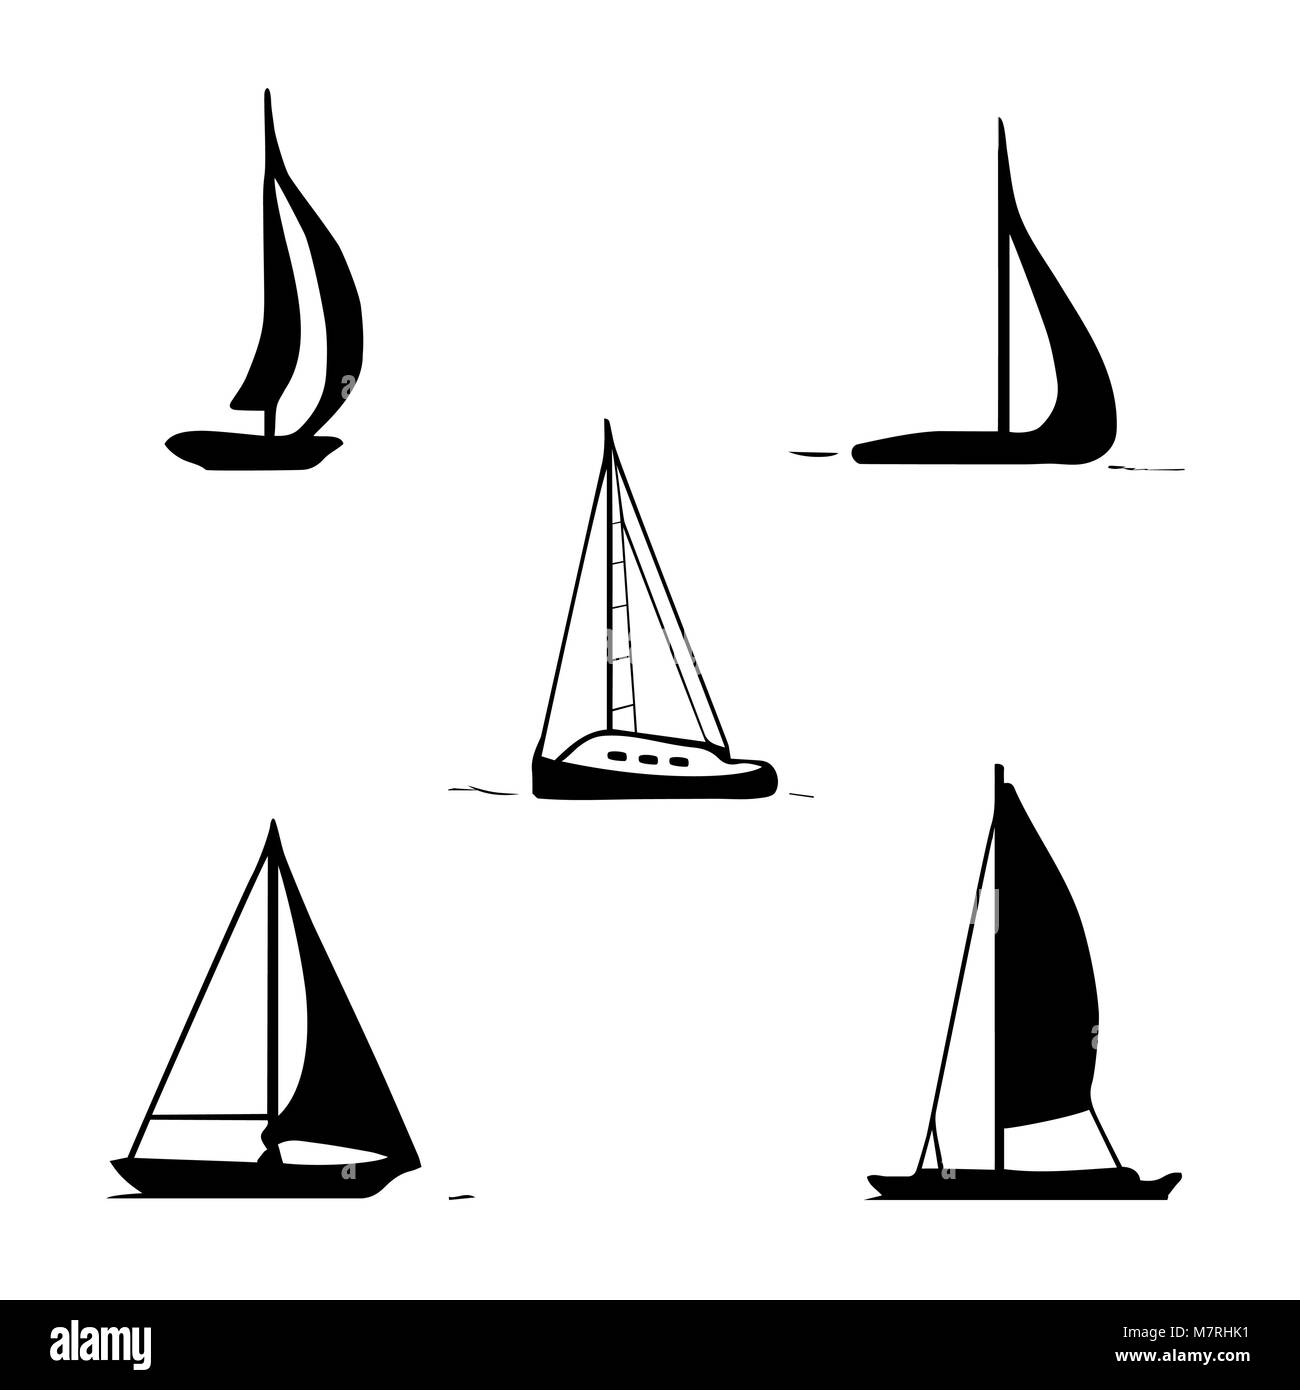 Transporte Oceánico. Barcos de vela, yate, lancha, crucero. Ilustración del Vector